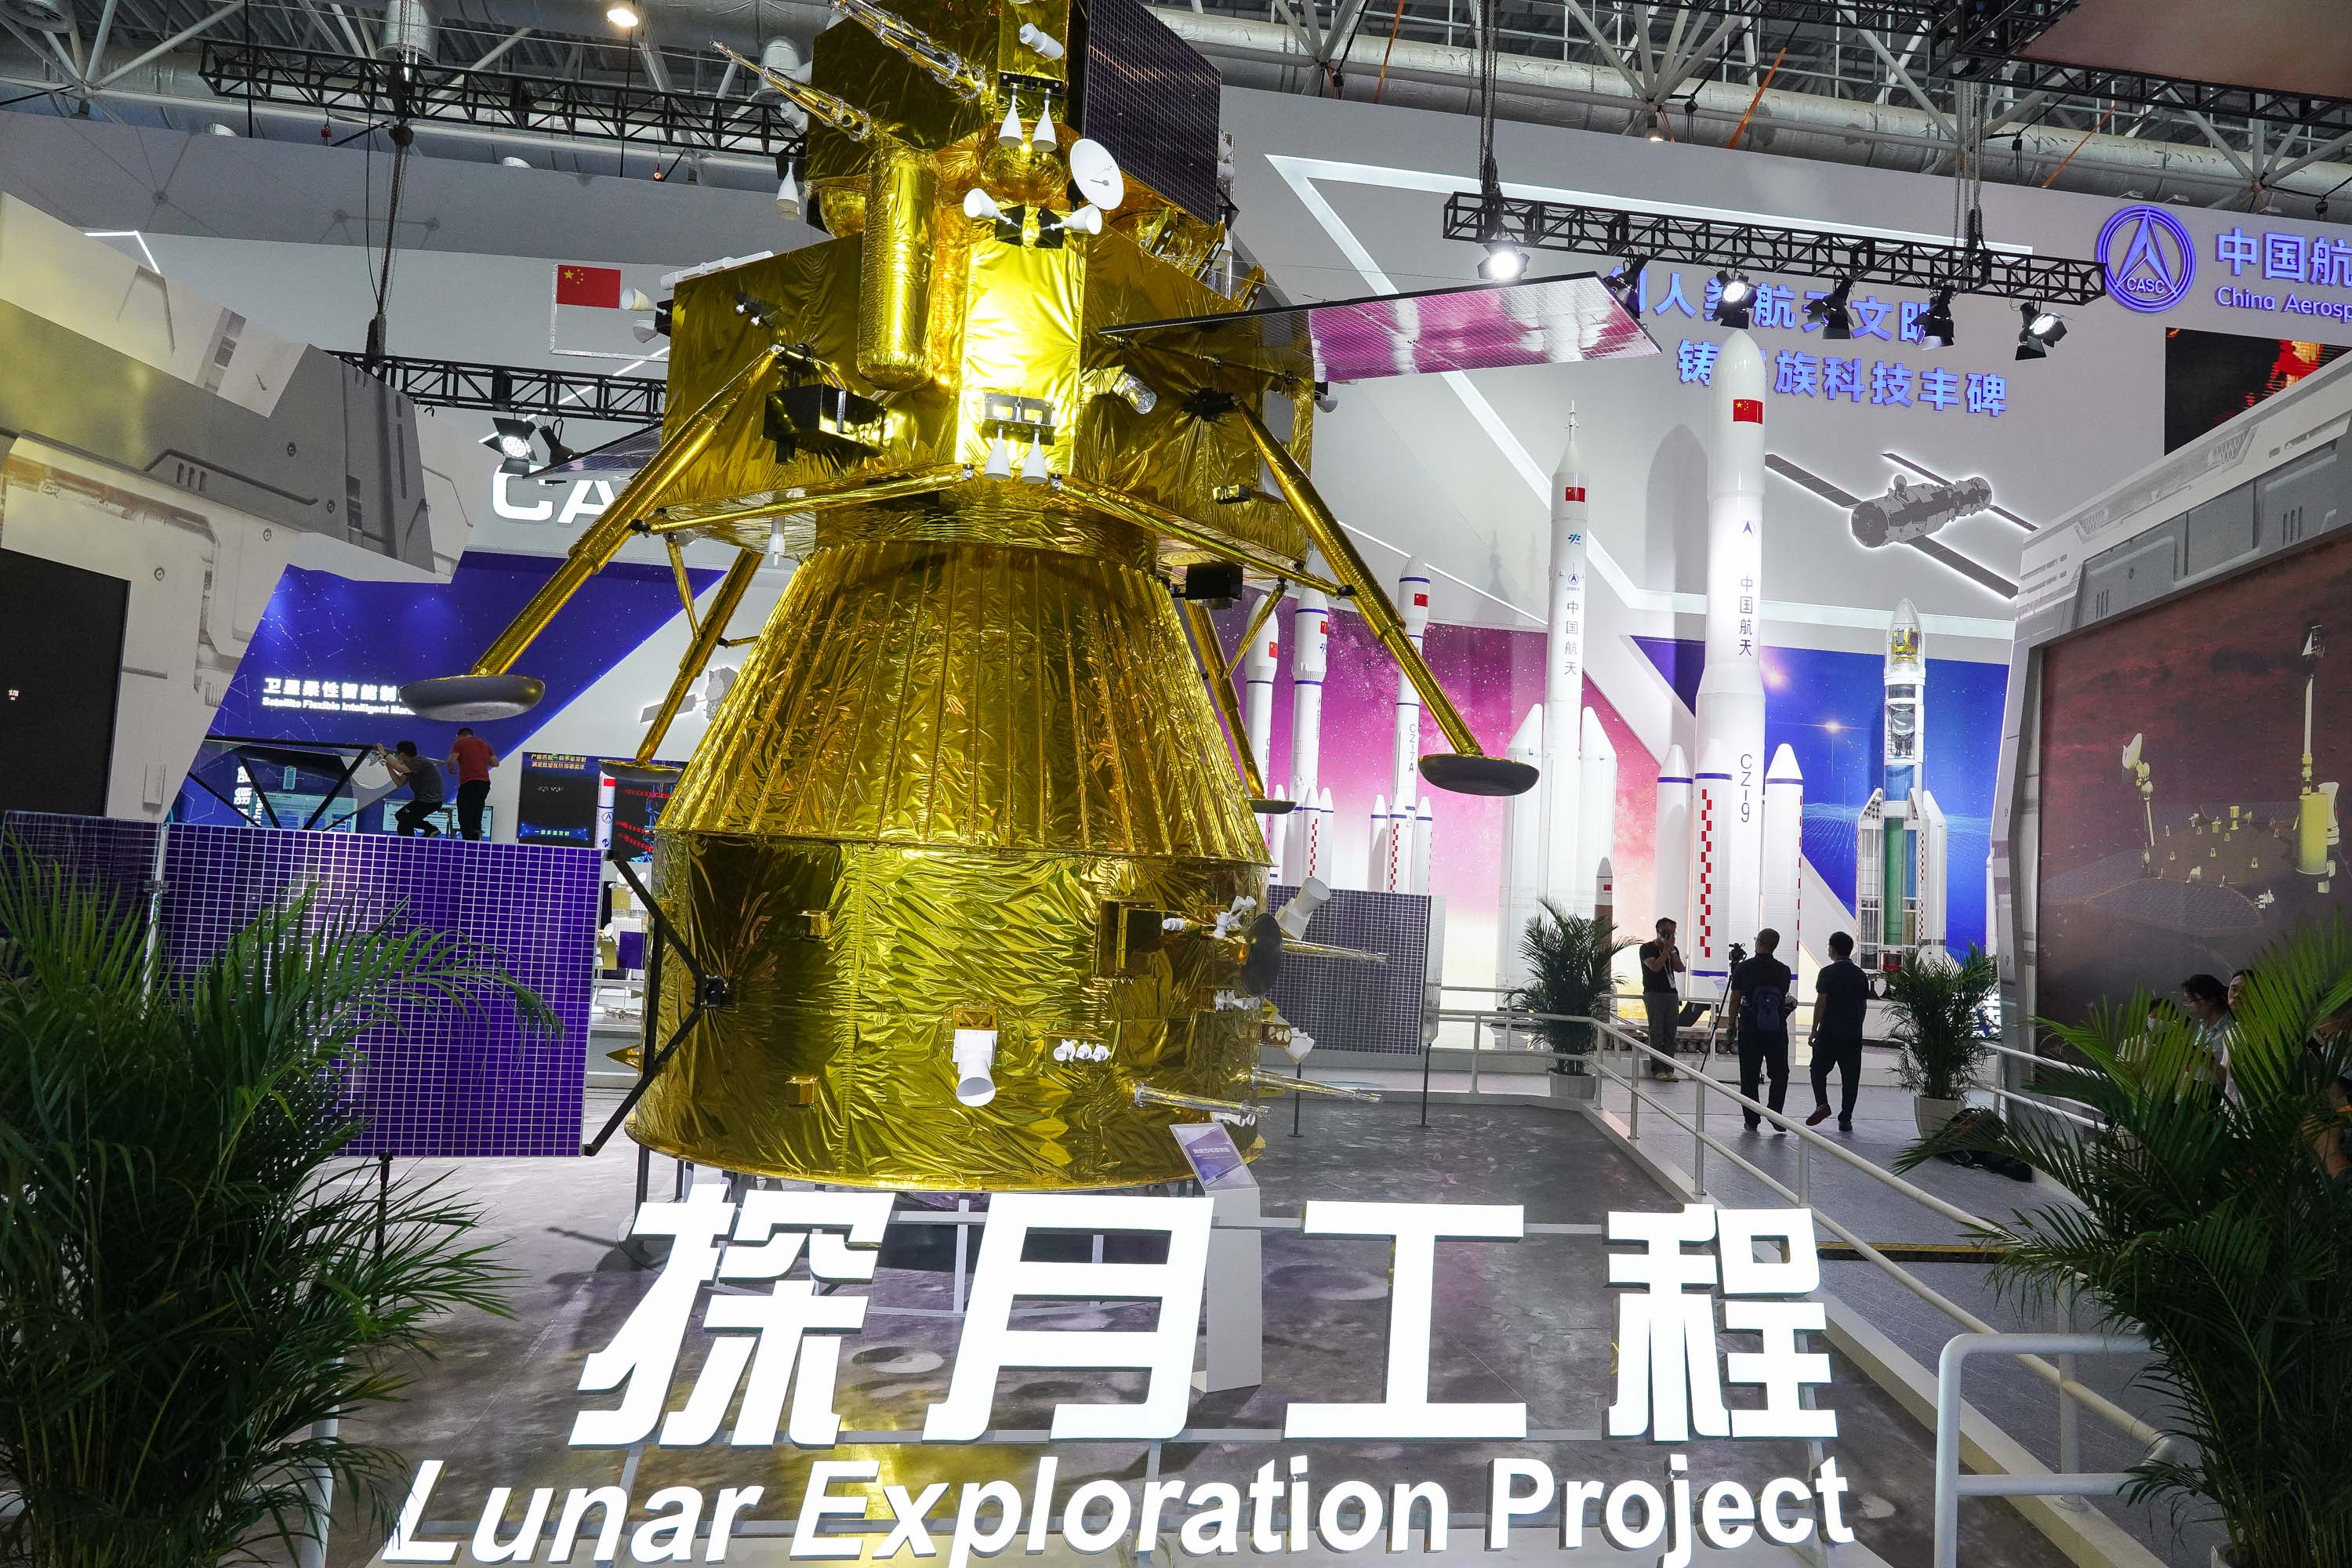 中国探月工程发布的超清素材相片与视频 | JiaYu Blog